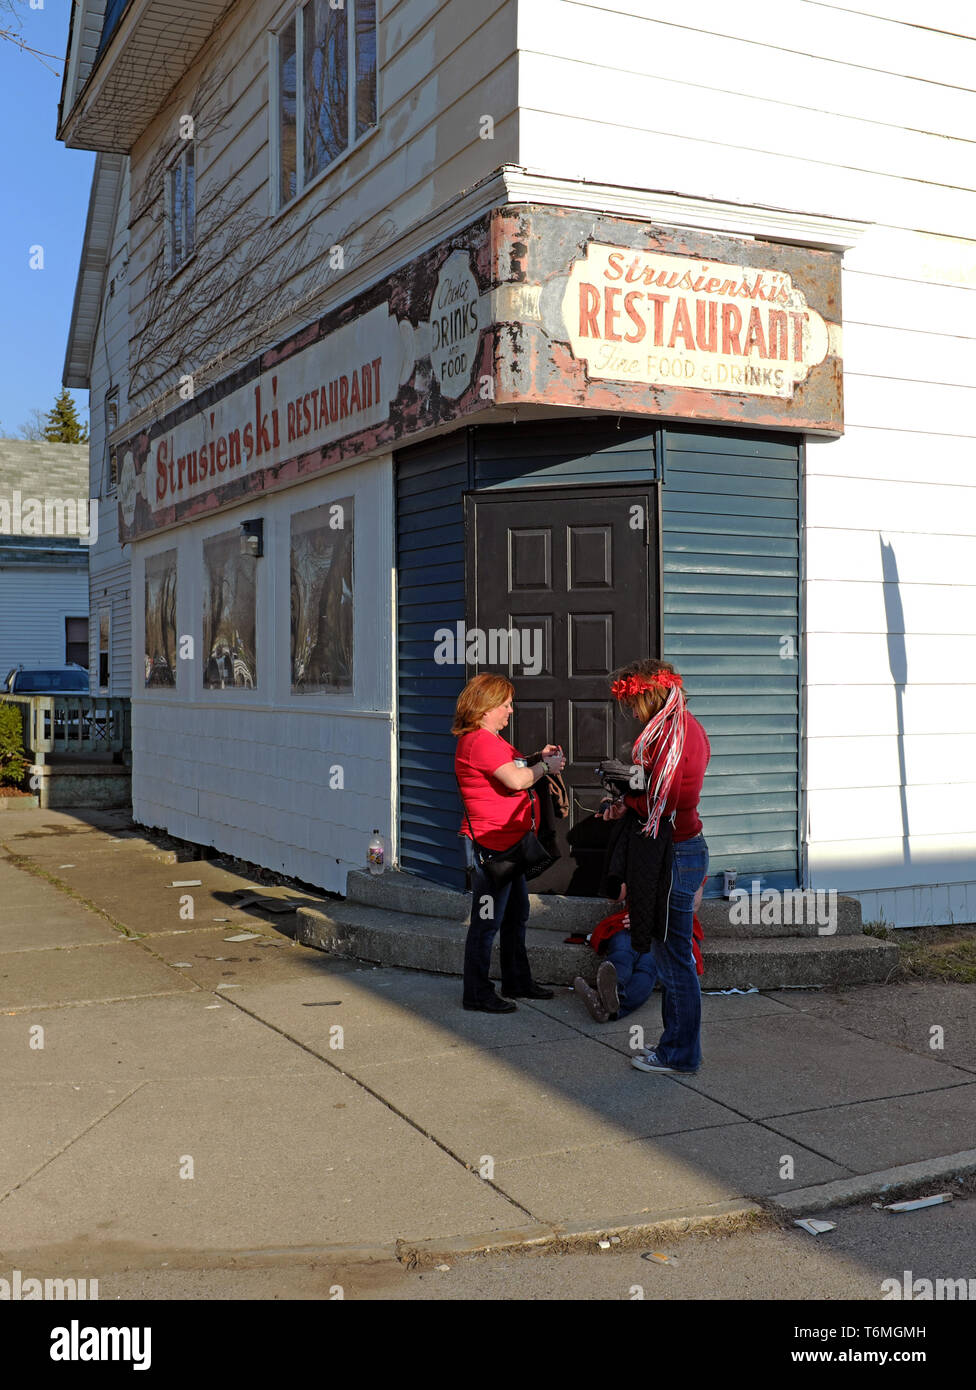 Zwei Frauen am Dyngus Day stehen vor dem Wahrzeichen Strusienskis Restaurant am Padesewski Drive im Polonia District von Buffalo, New York, USA. Stockfoto